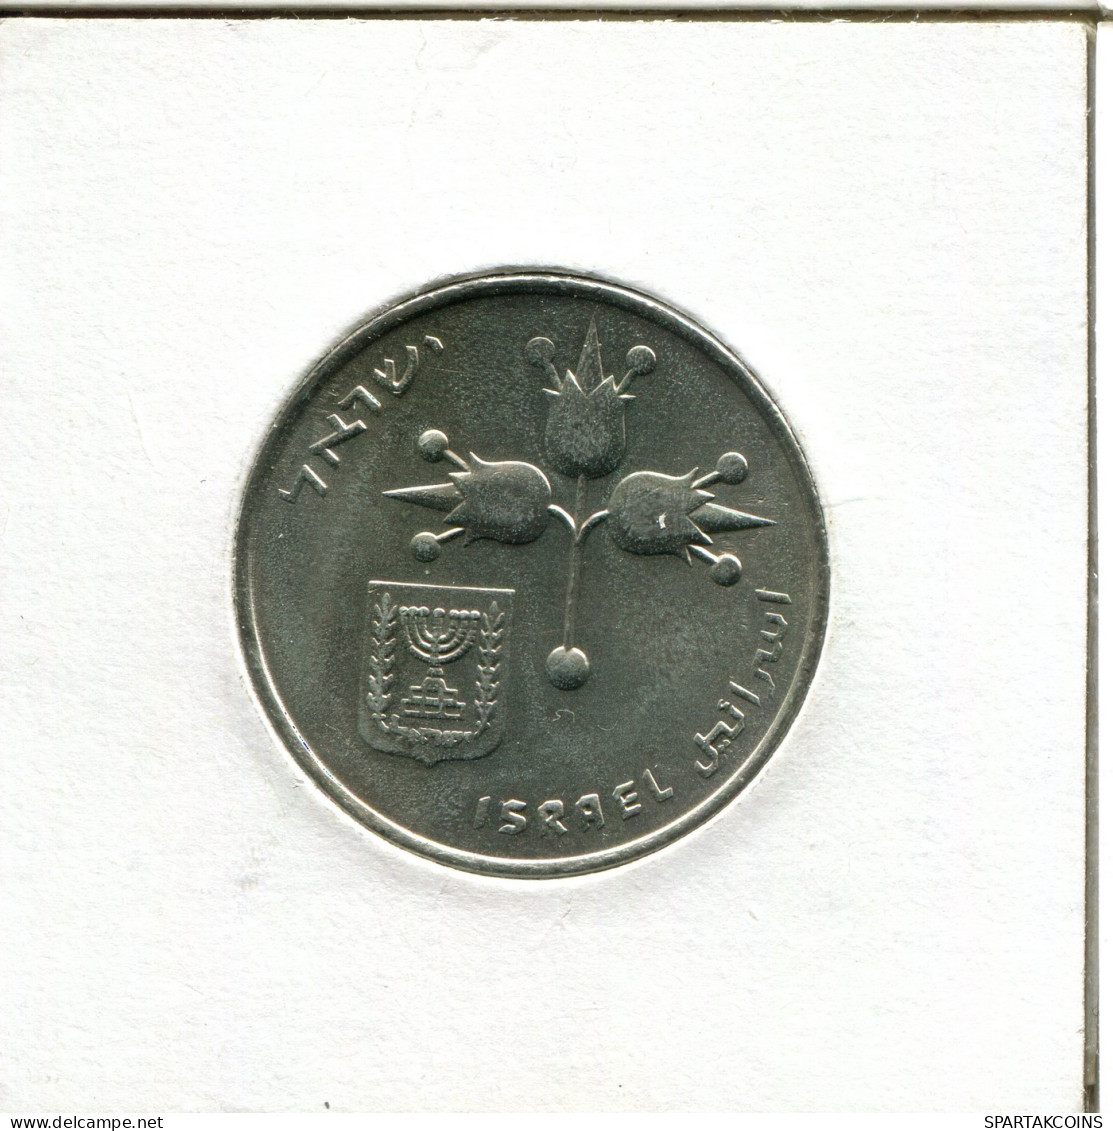 1 LIRA 1979 ISRAEL Moneda #AX815.E.A - Israel